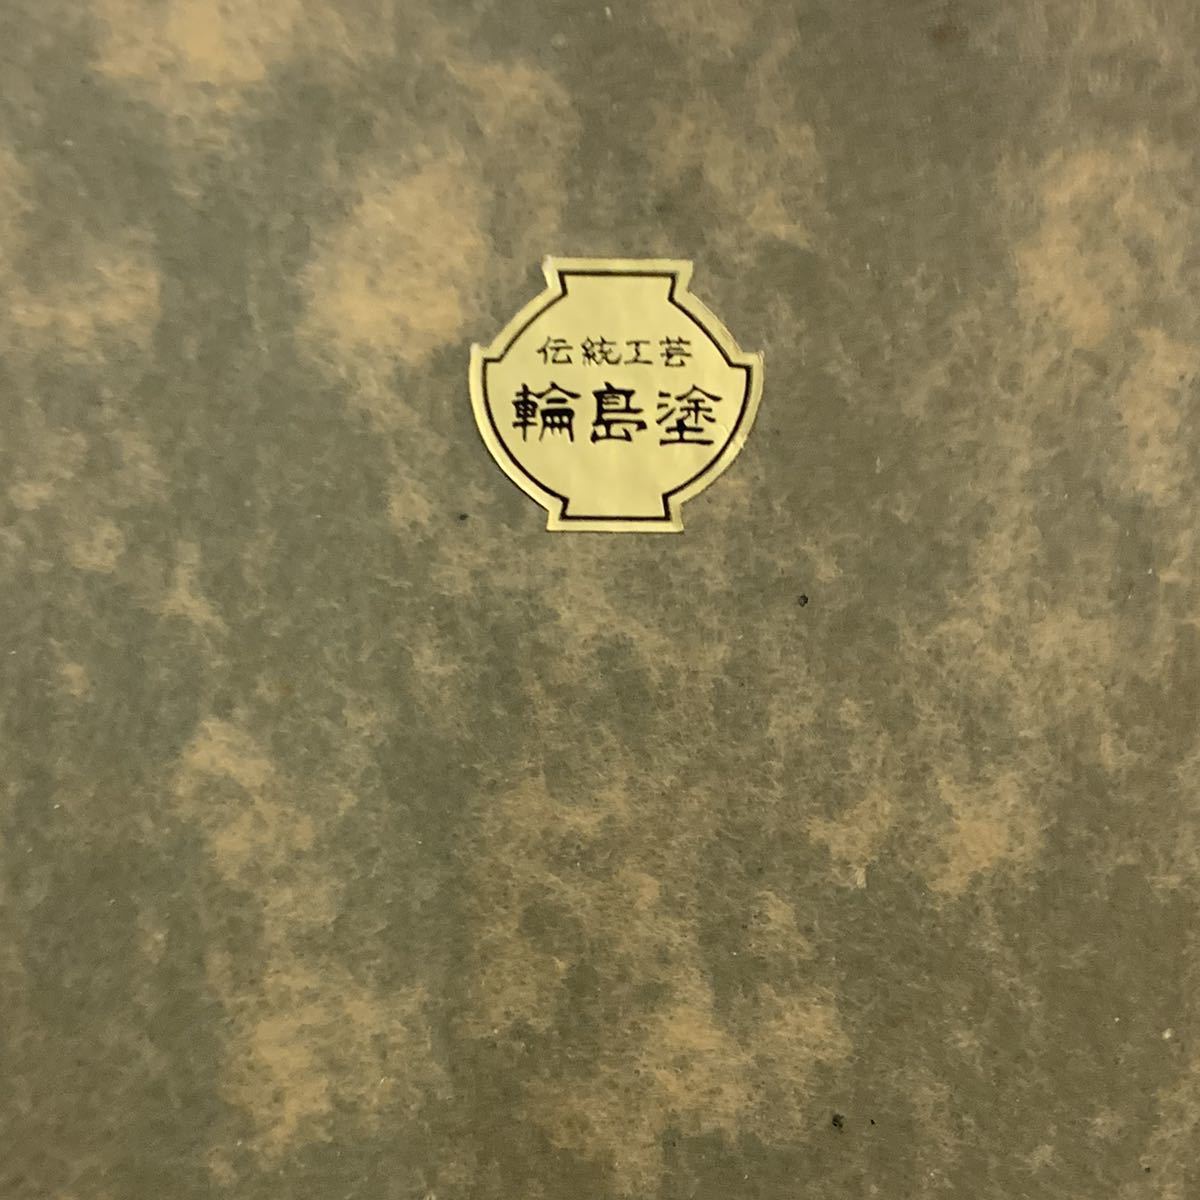 赤47 輪島塗パネル 在銘 歌舞伎 額サイズ約51×42.5㎝(漆芸)｜売買され 